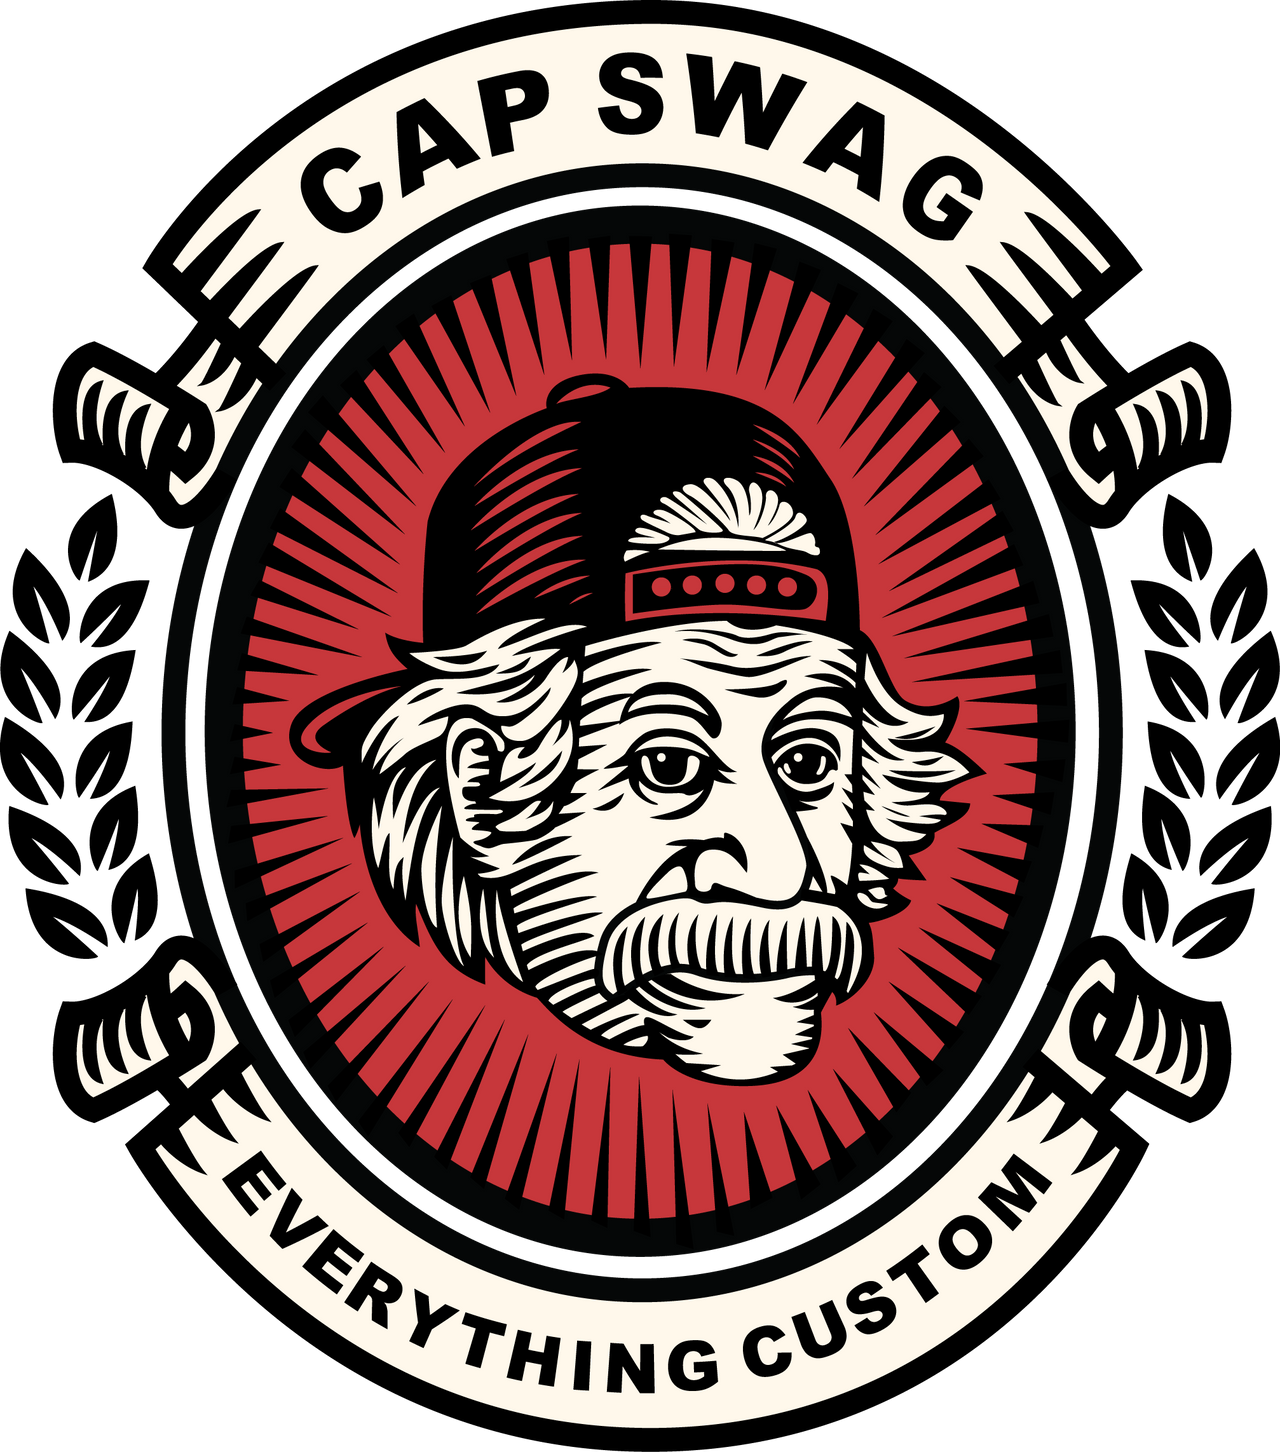 CapSwag.com